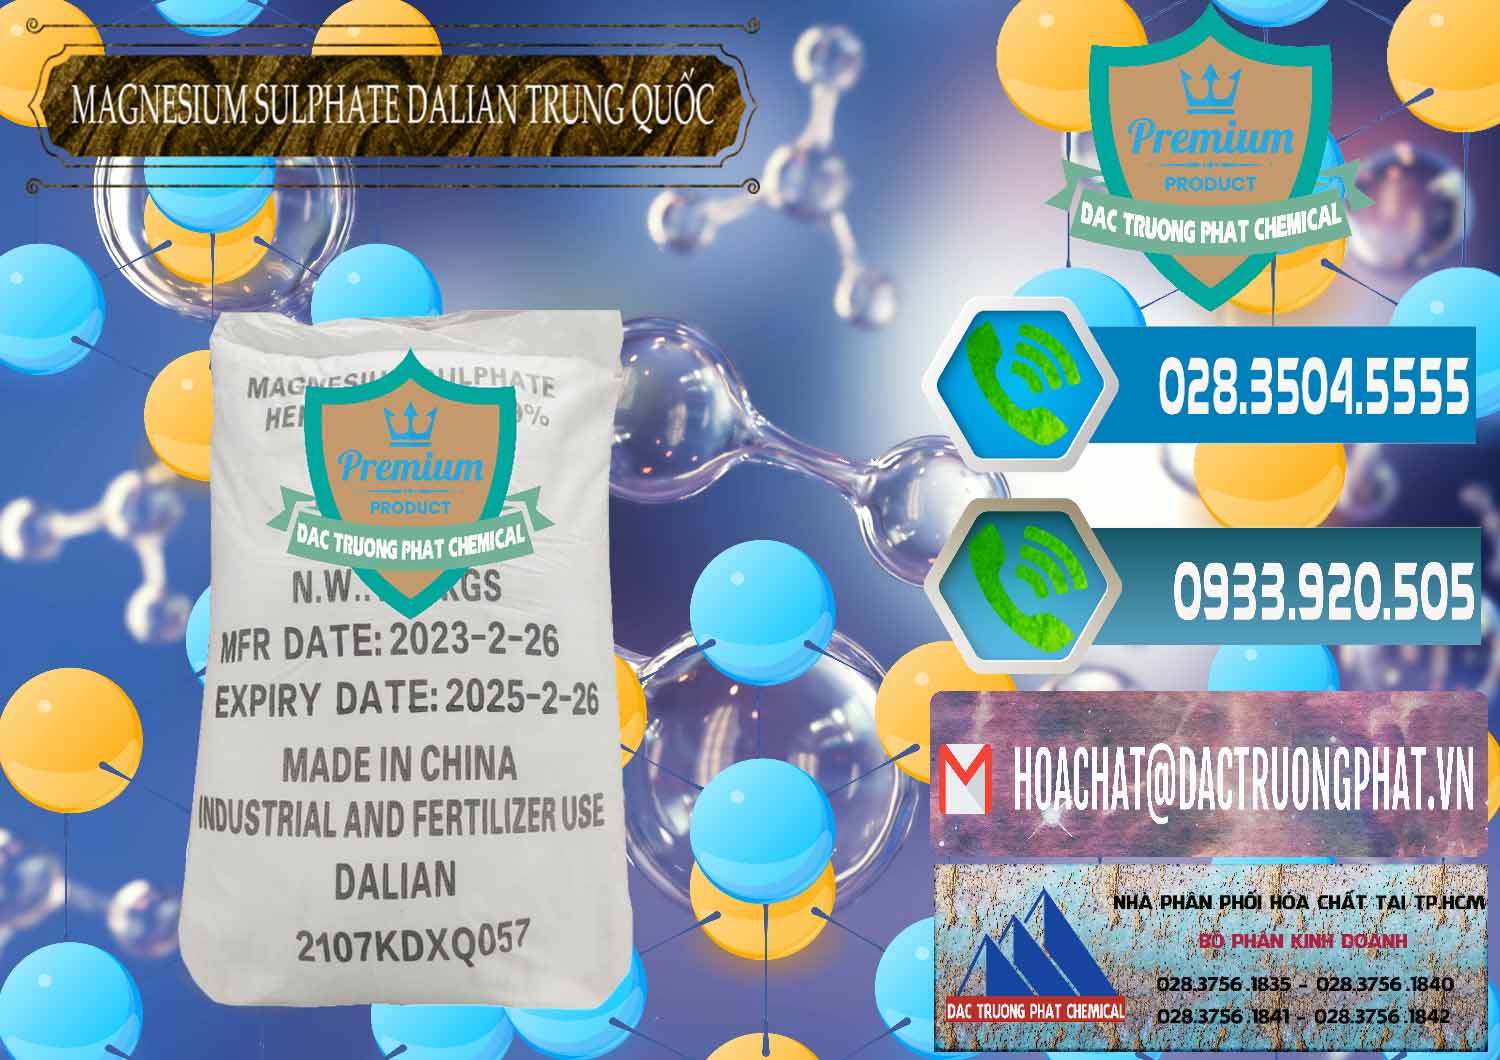 Cty chuyên bán và cung cấp MGSO4.7H2O – Magnesium Sulphate Heptahydrate Dalian Trung Quốc China - 0393 - Công ty cung cấp _ phân phối hóa chất tại TP.HCM - congtyhoachat.net